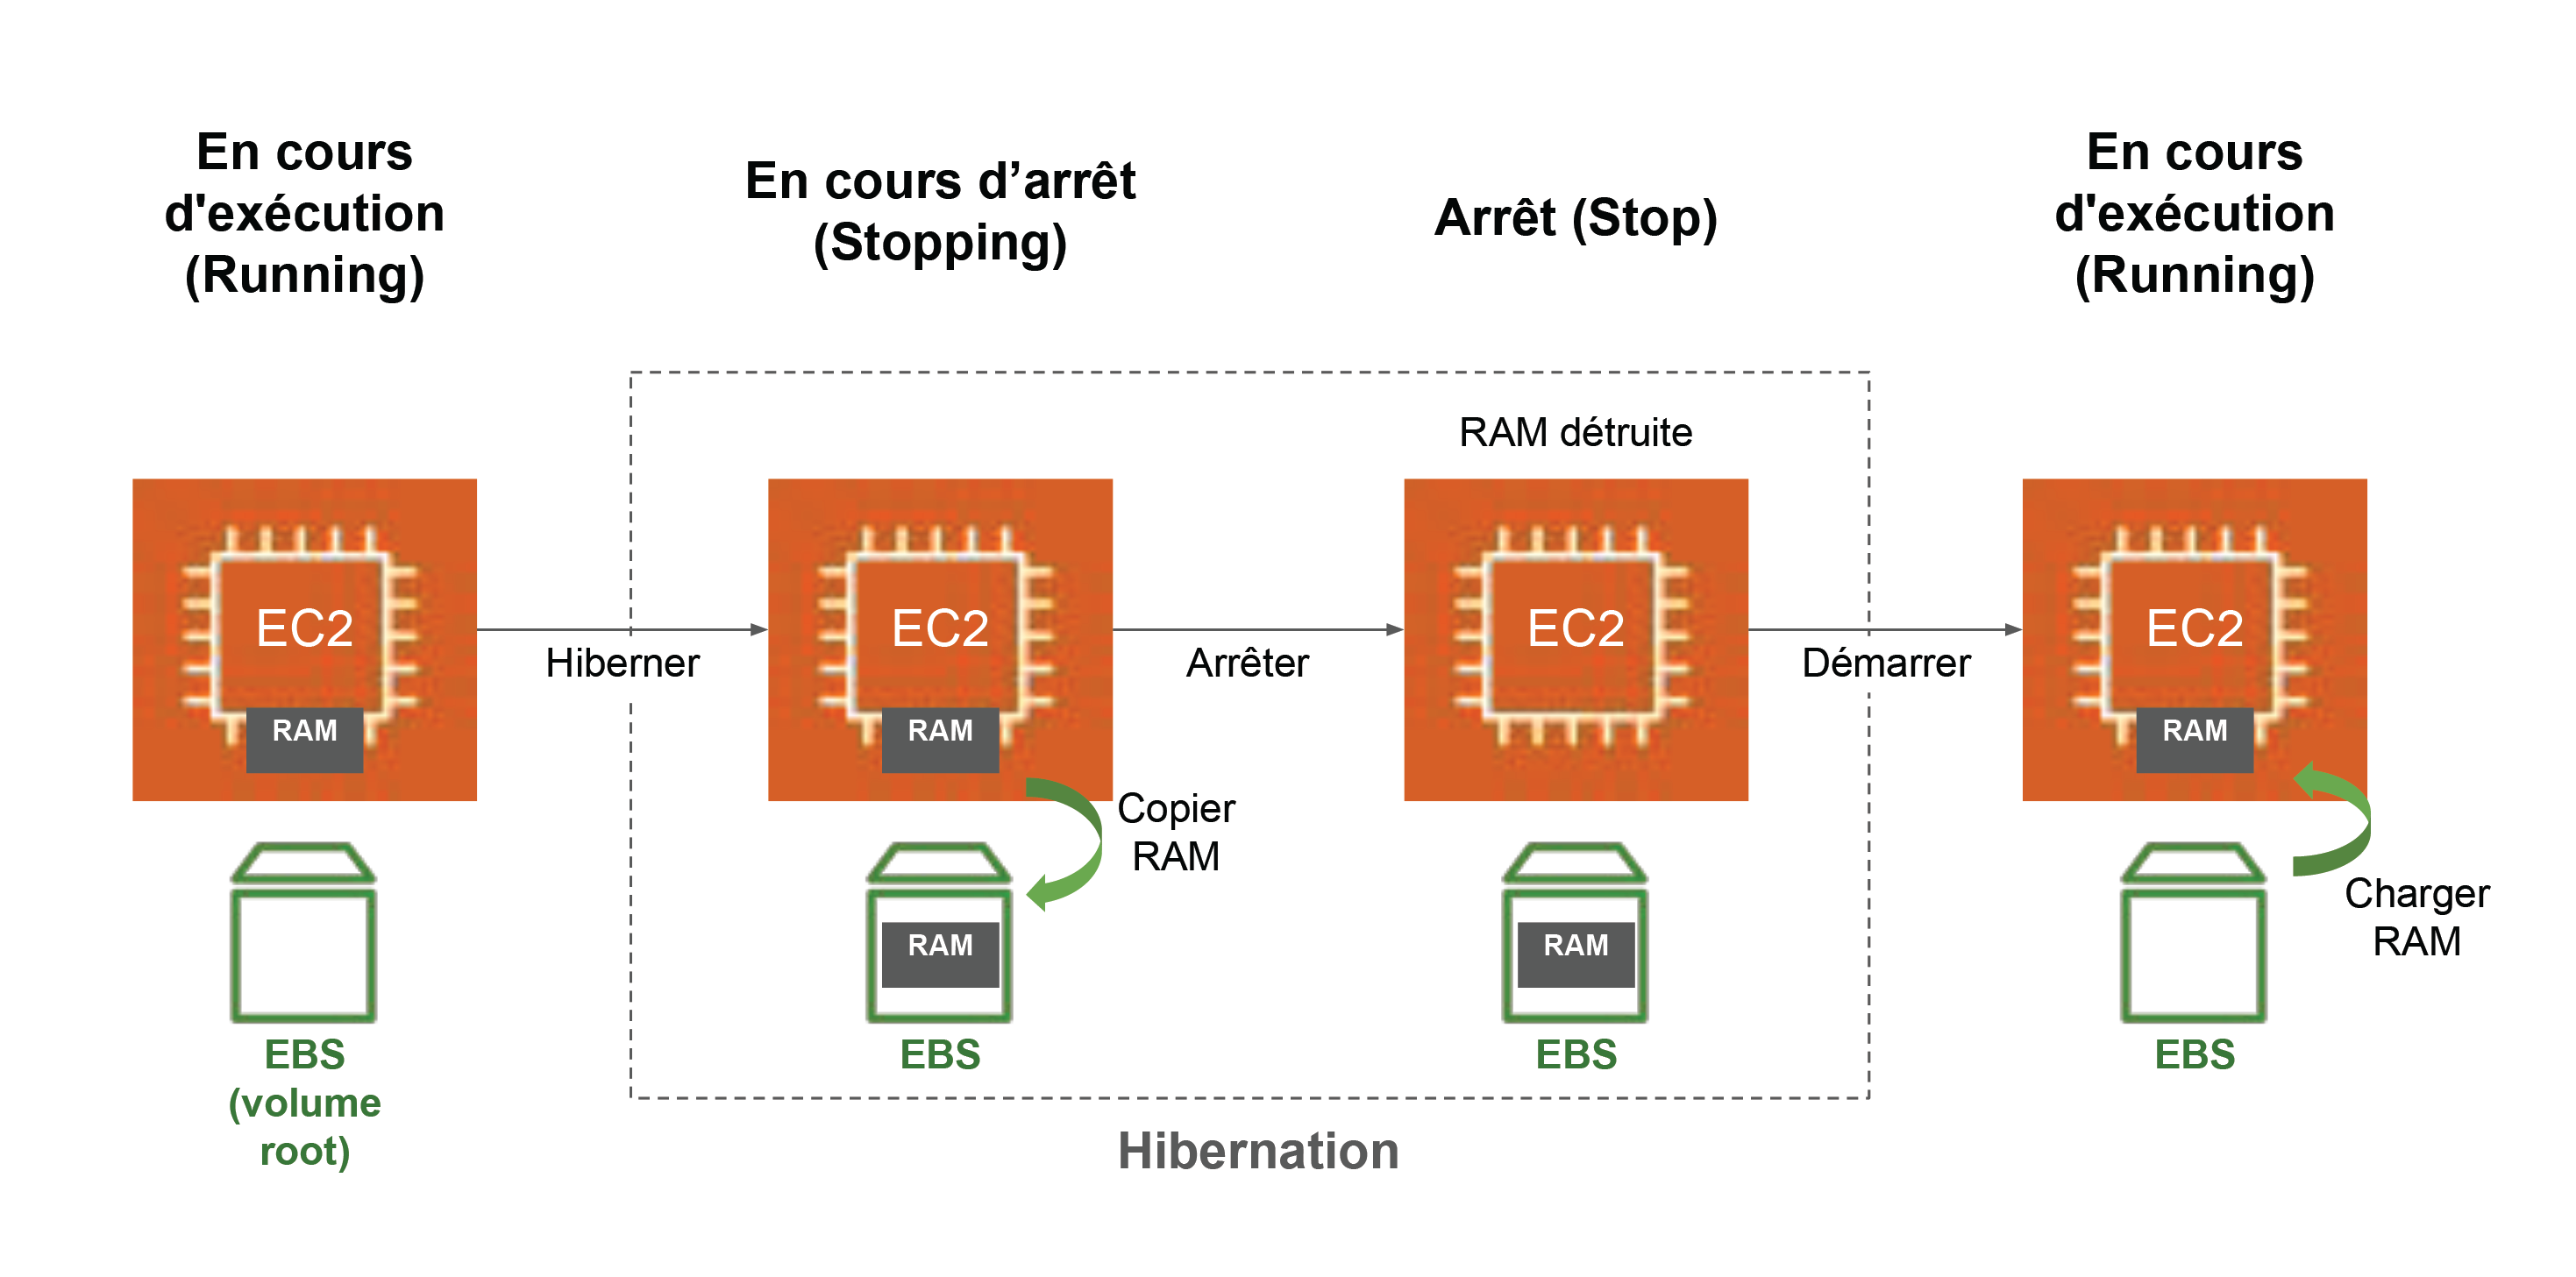 EC2 Hibernation est une fonctionnalité qui permet d’enregistrer l’état de la mémoire vive (RAM) des instances EC2, au moment de leur arrêt (stop), dans un volume root de type EBS.